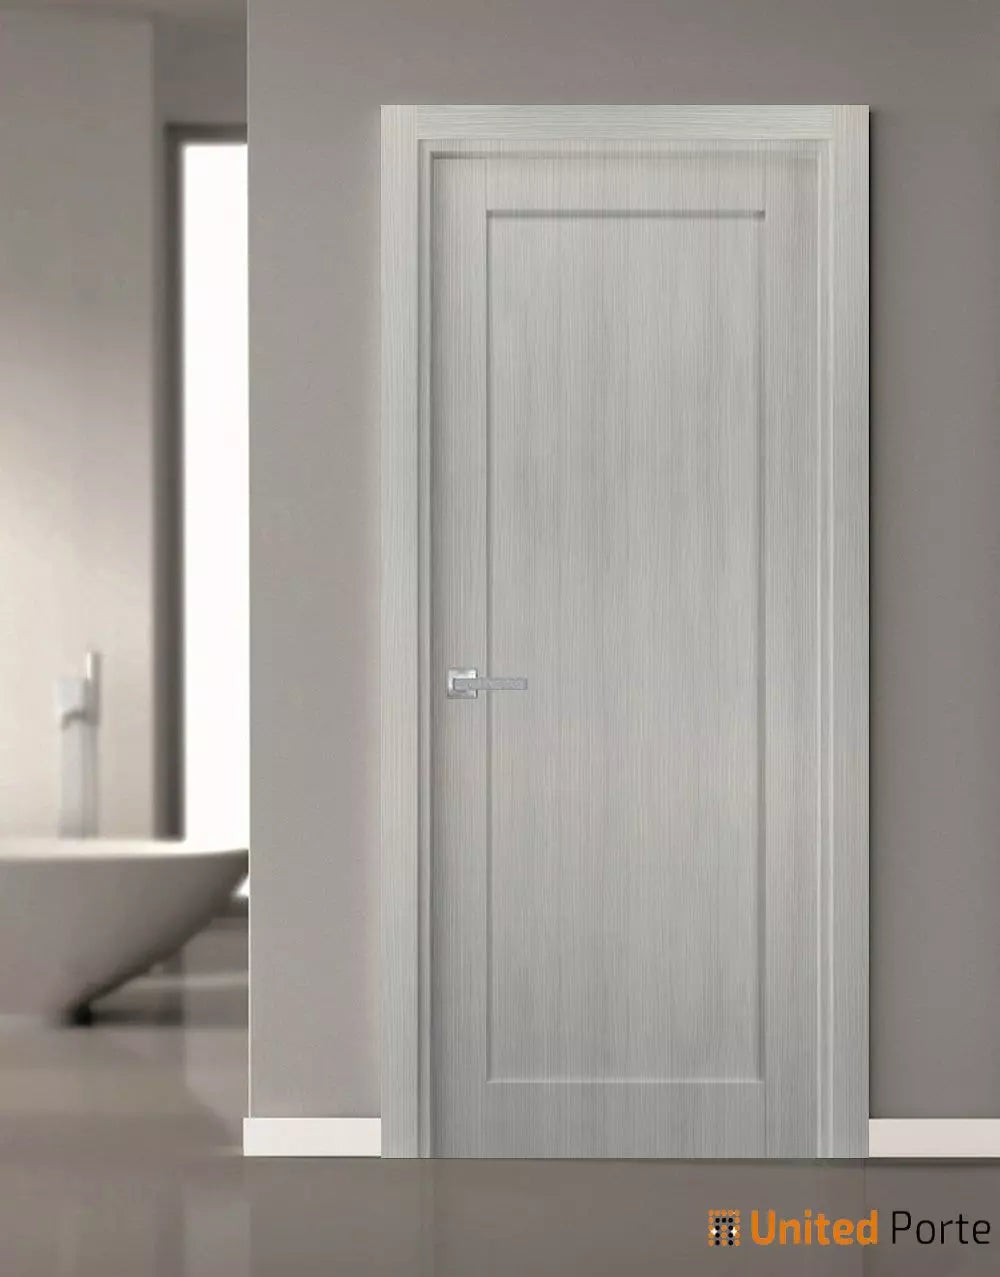 Pantry Kitchen Swing Door with Hardware | Bathroom Bedroom Sturdy Doors | Buy Doors Online